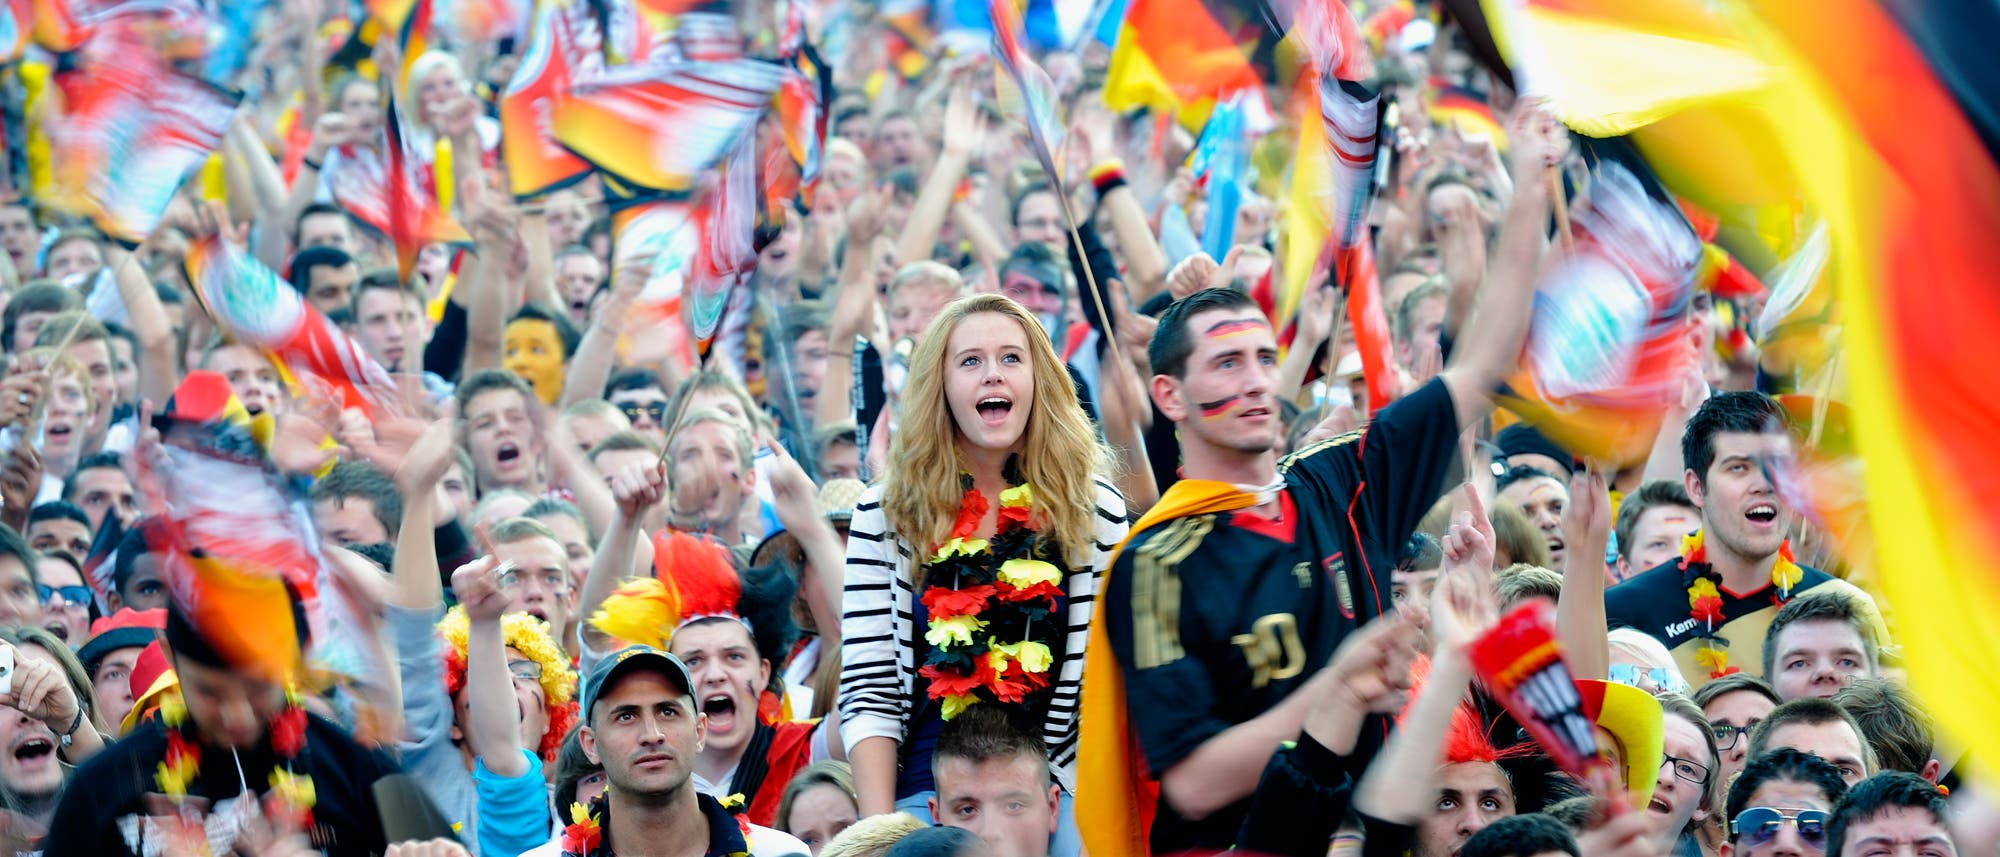 Für die einen ein Schreckgespenst, für andere Ausdruck friedlichen Partypatriotismus: deutsche Fans feiern beim Public Viewing